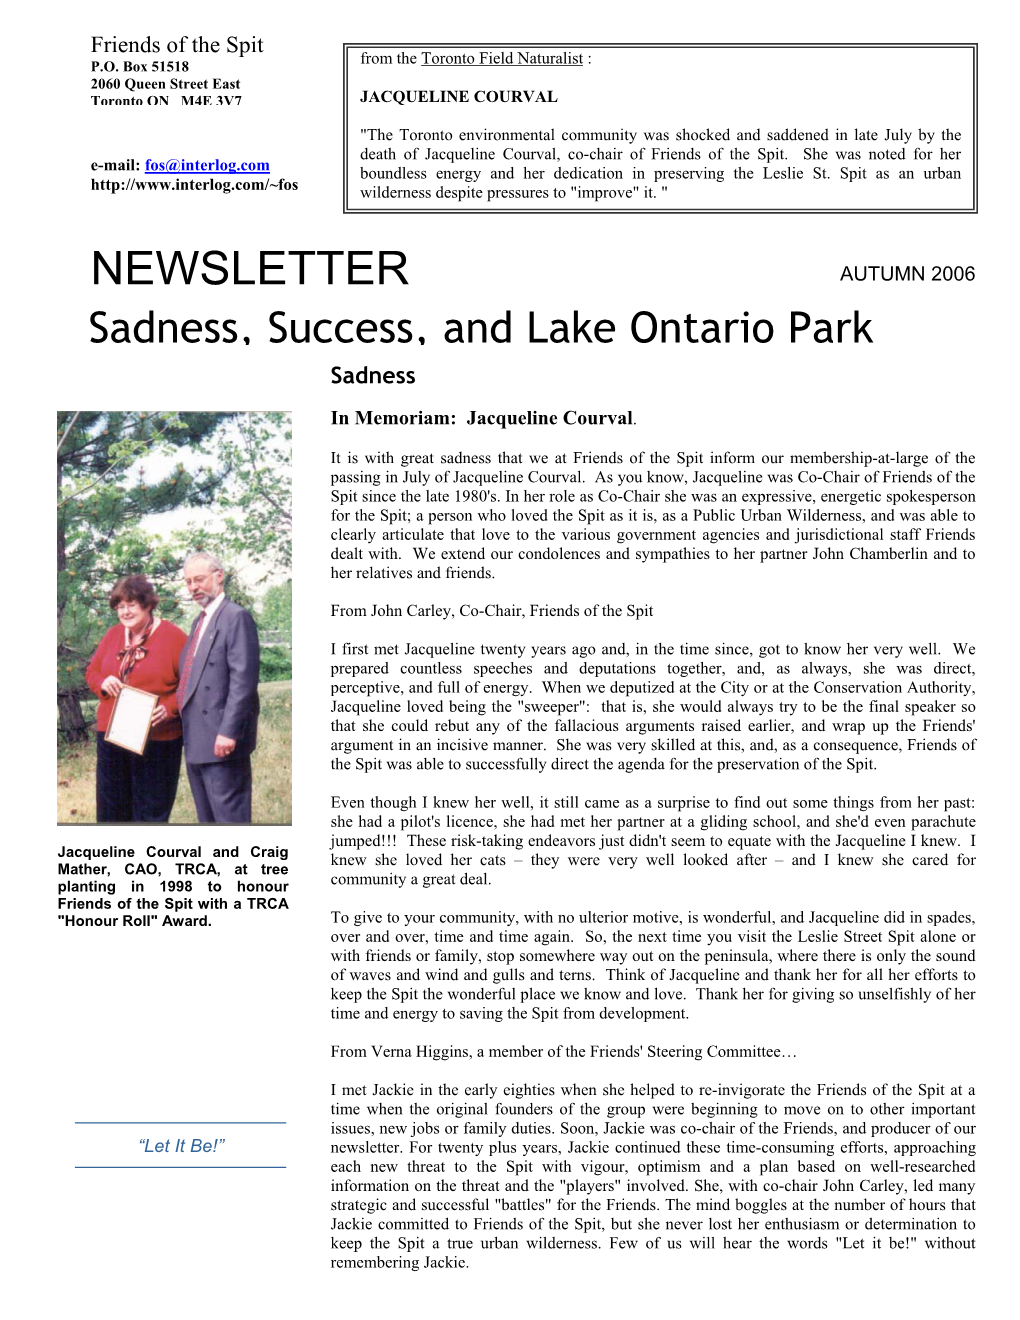 NEWSLETTER AUTUMN 2006 Sadness, Success, and Lake Ontario Park Sadness